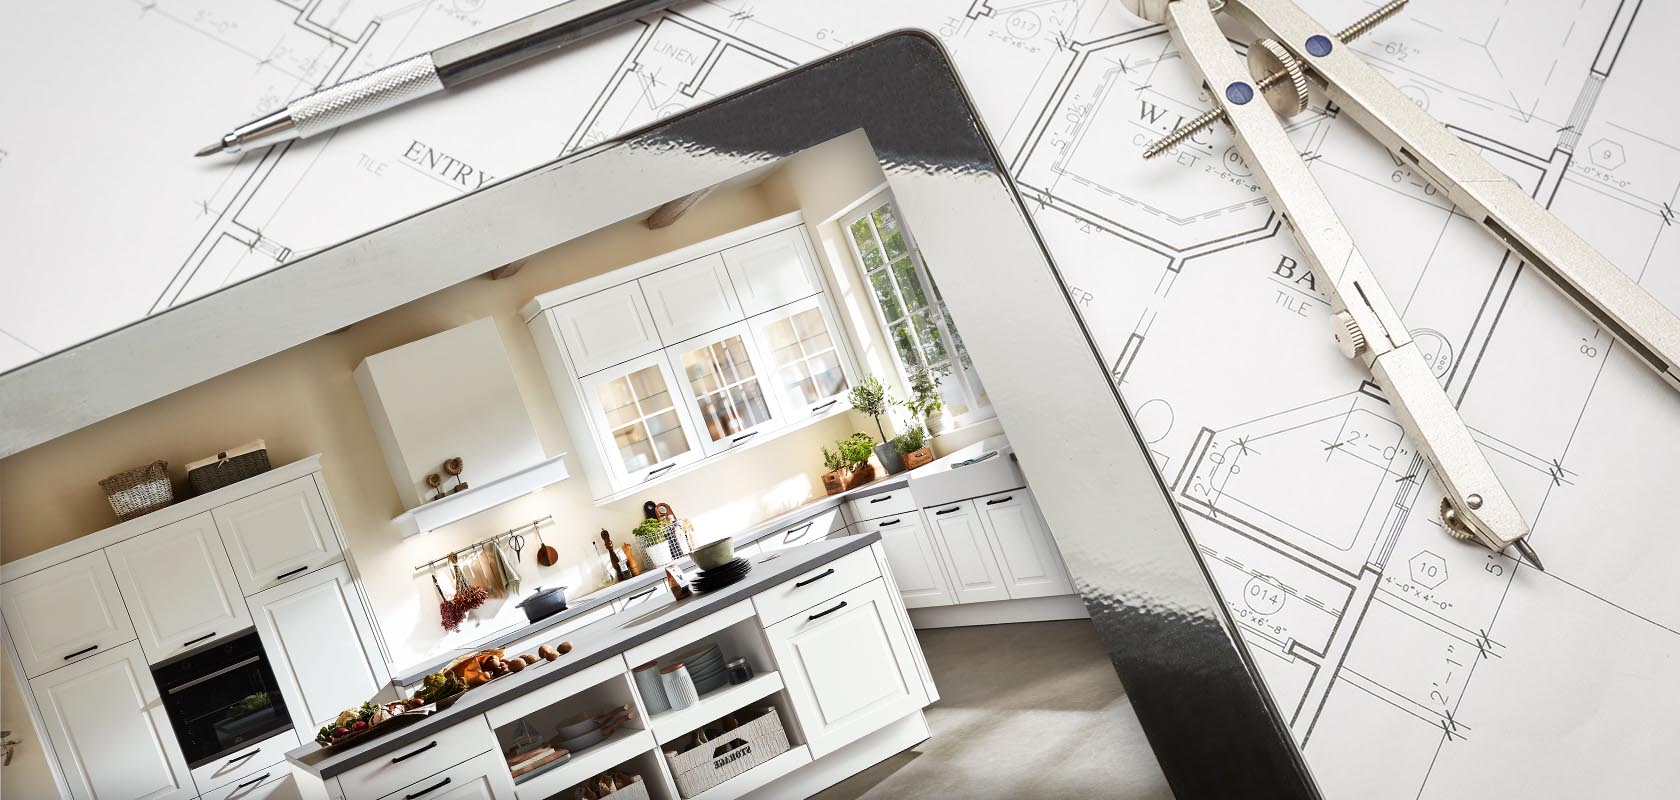 Passer des plans à une cuisine élégante et moderne avec des armoires blanches, mettant en valeur la transformation du design à l'achèvement dans la rénovation domiciliaire.